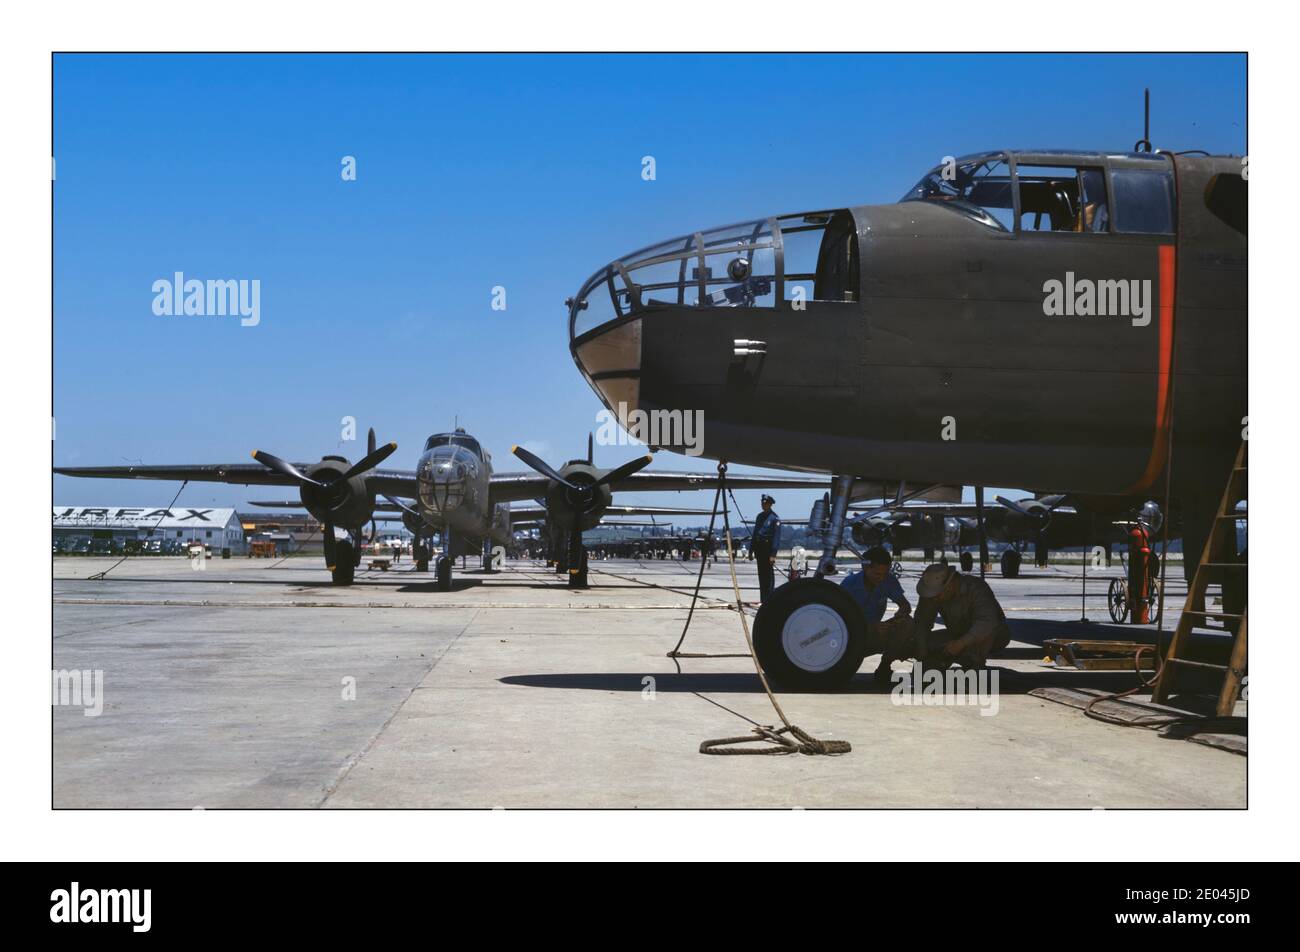 WW2 B-25 Bomber production War effort USA nouveaux bombardiers B-25 alignés pour l'inspection finale et les essais sur le champ de vol d'une usine d'aviation, North American Aviation, Inc., Calif. Il se produit au plafond de 25,000 pieds Palmer, Alfred T., photographe 1942 juillet North American Aviation, Inc - Industrie de l'avion- méthodes de production de lignes de montage Guerre mondiale, 1939-1945 - bombardiers États-Unis--Californie--Inglewood Banque D'Images